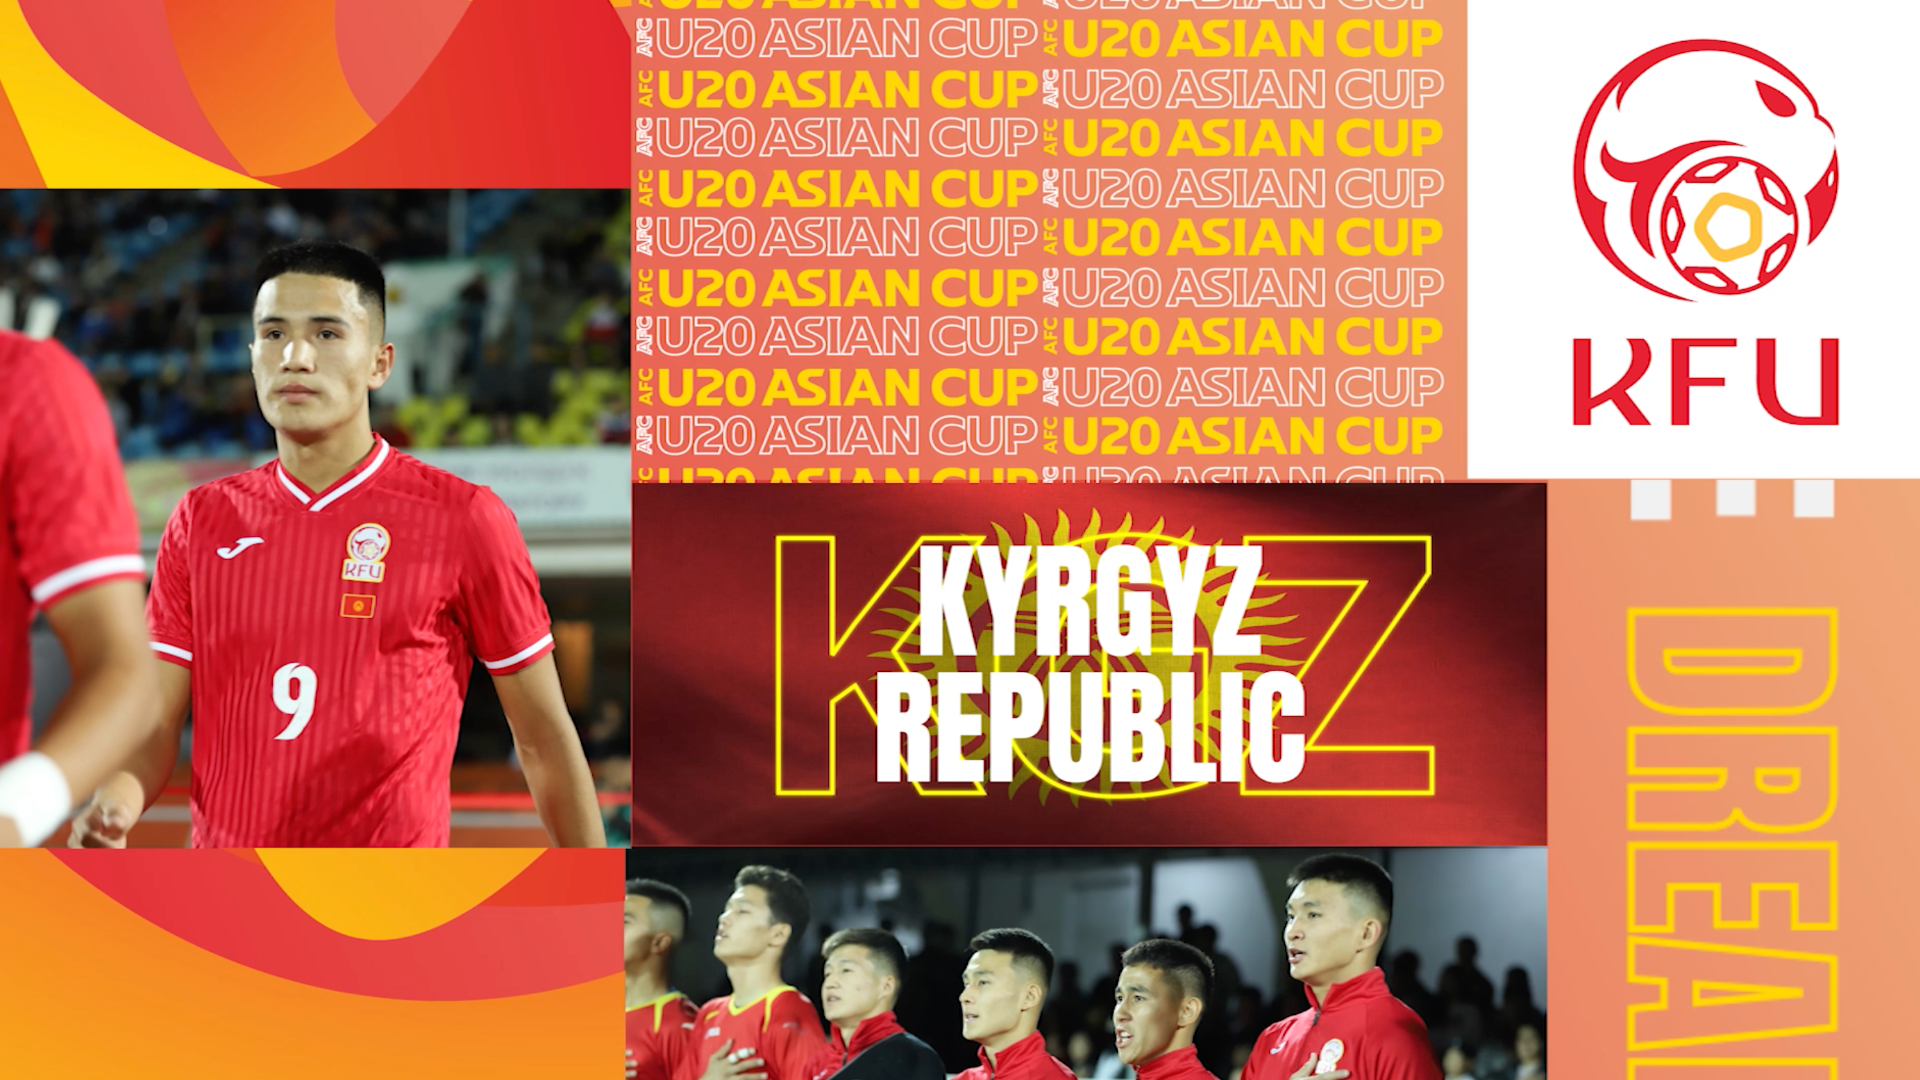 AFC U20 Asian Cup: Các siêu sao bóng đá trẻ tuổi của Châu Á đã rất tuyệt vời tại giải đấu quan trọng này. Hãy cùng xem và cổ vũ cho những ngôi sao trẻ khi họ thi đấu tại AFC U20 Asian Cup.